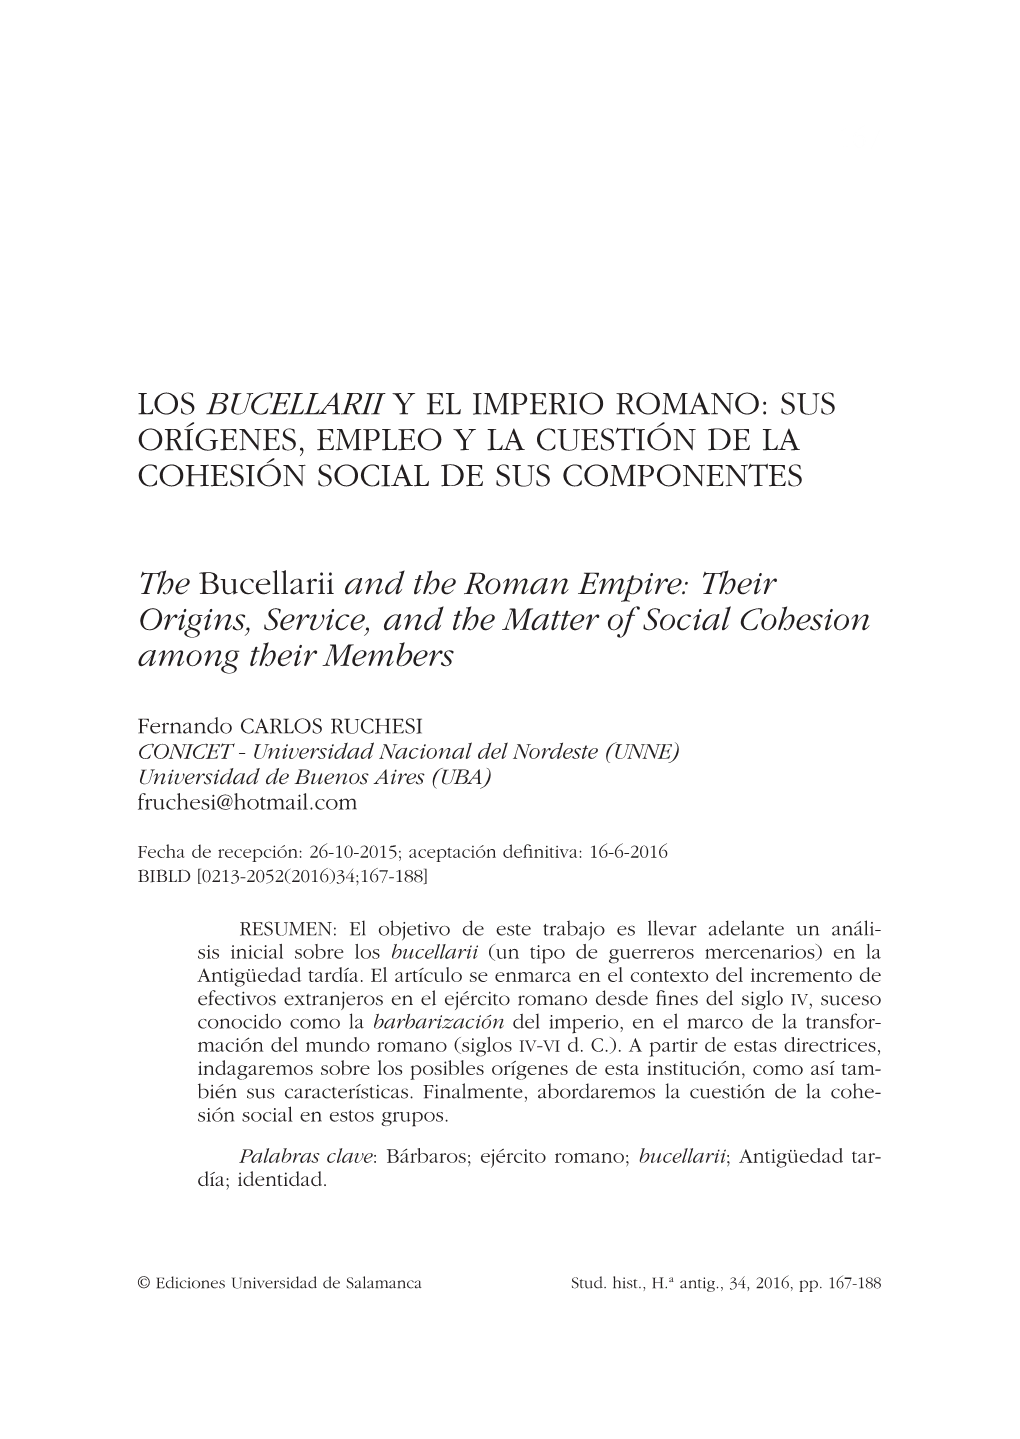 Los Bucellarii Y El Imperio Romano: Sus Orígenes, Empleo Y La Cuestión De La Cohesión Social De Sus Componentes